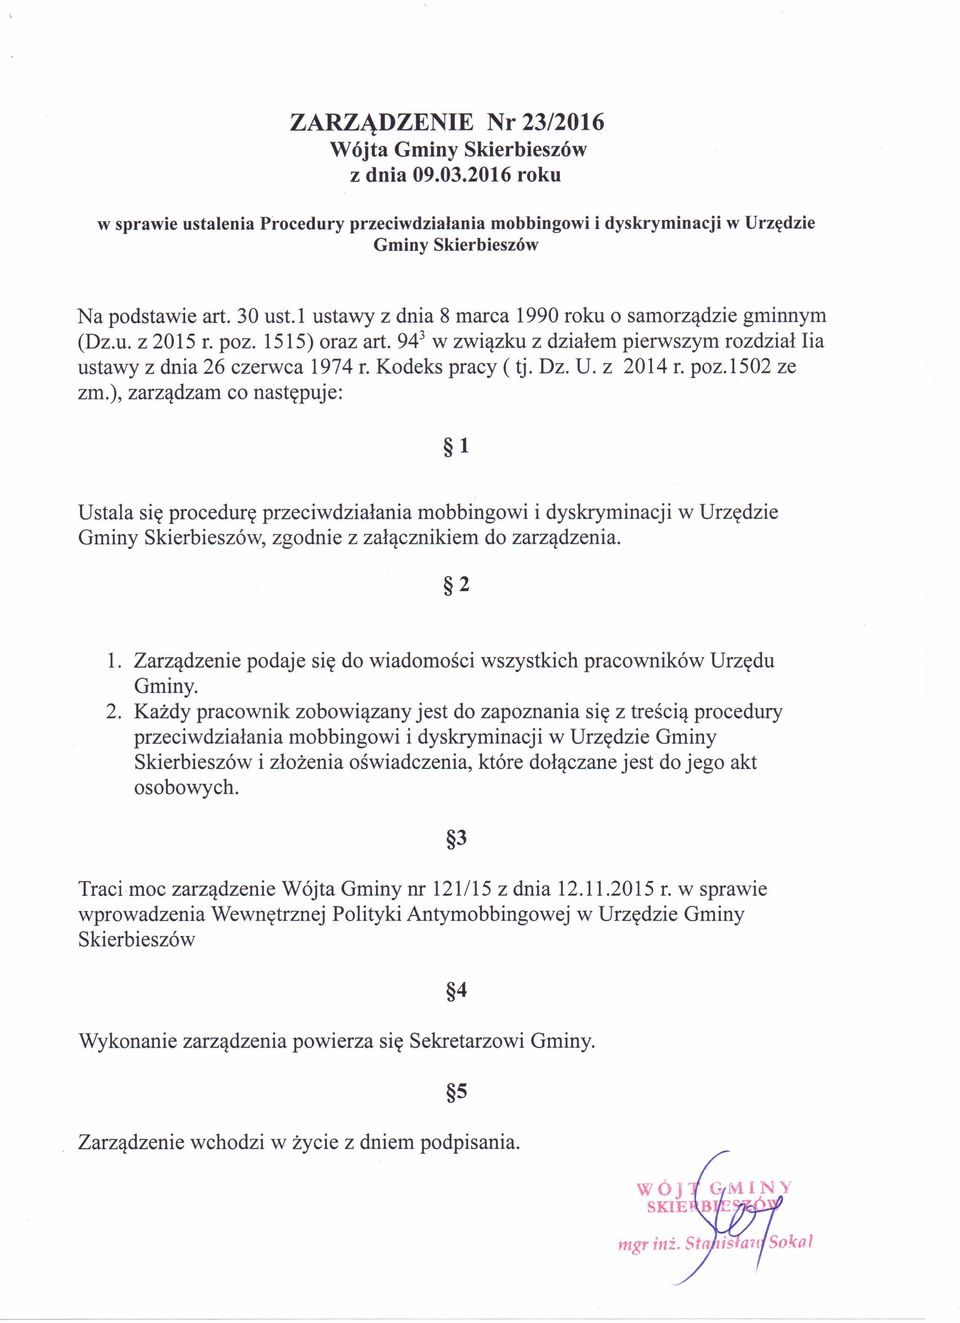 z 2014 r. poz.1502 ze zm.), zarządzam co następuje: 1 Ustala się procedurę przeciwdziałania mobbingowi i dyskryminacji w Urzędzie Gminy Skierbieszów, zgodnie z załącznikiem do zarządzenia. 2 1.